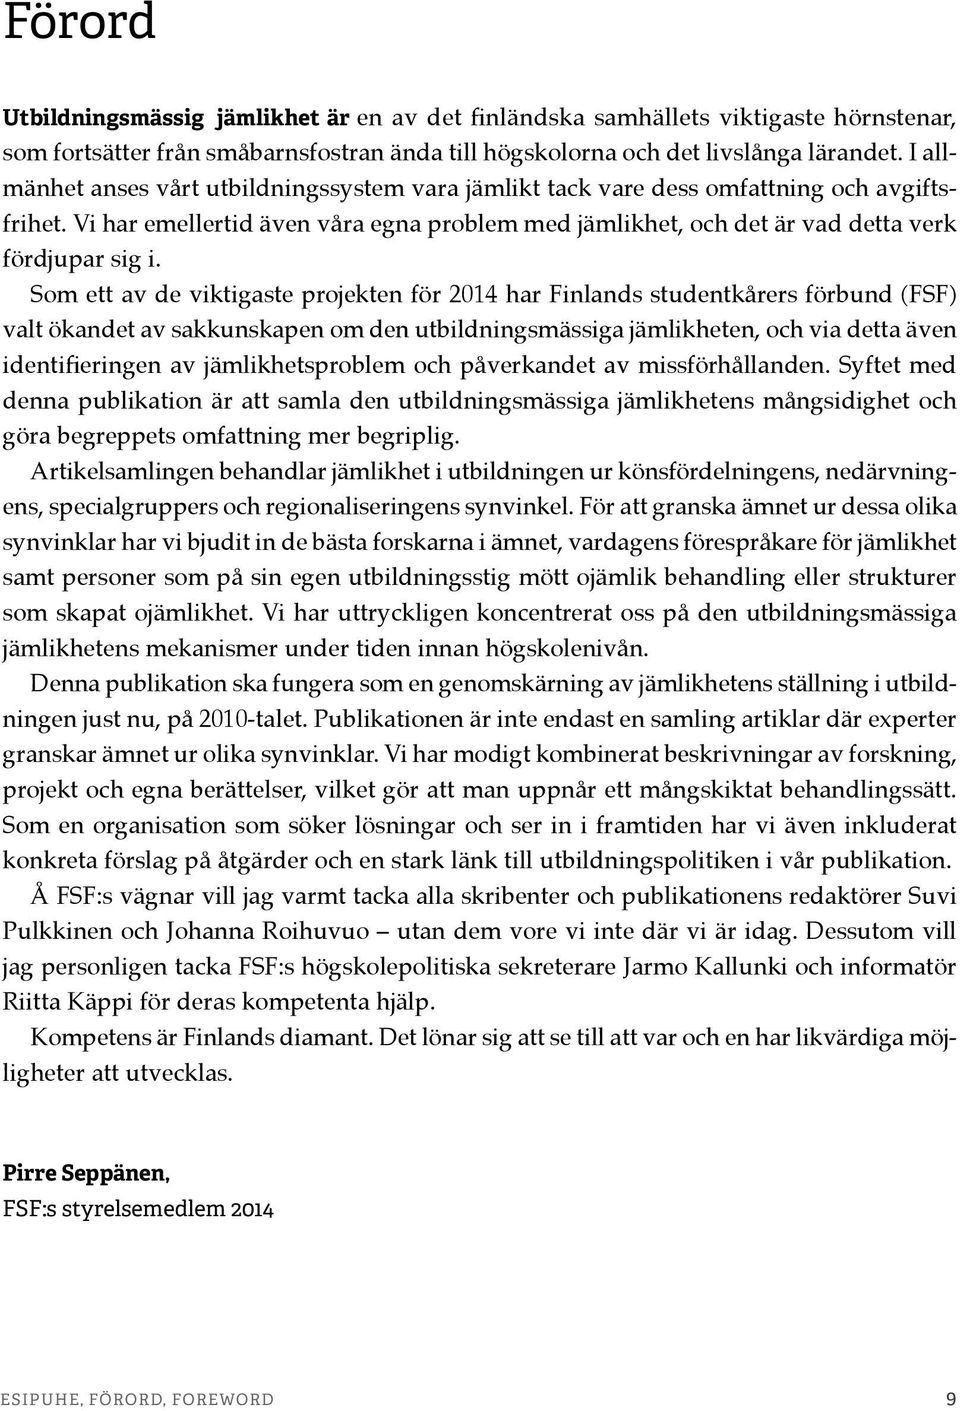 Som ett av de viktigaste projekten för 2014 har Finlands studentkårers förbund (FSF) valt ökandet av sakkunskapen om den utbildningsmässiga jämlikheten, och via detta även identifieringen av